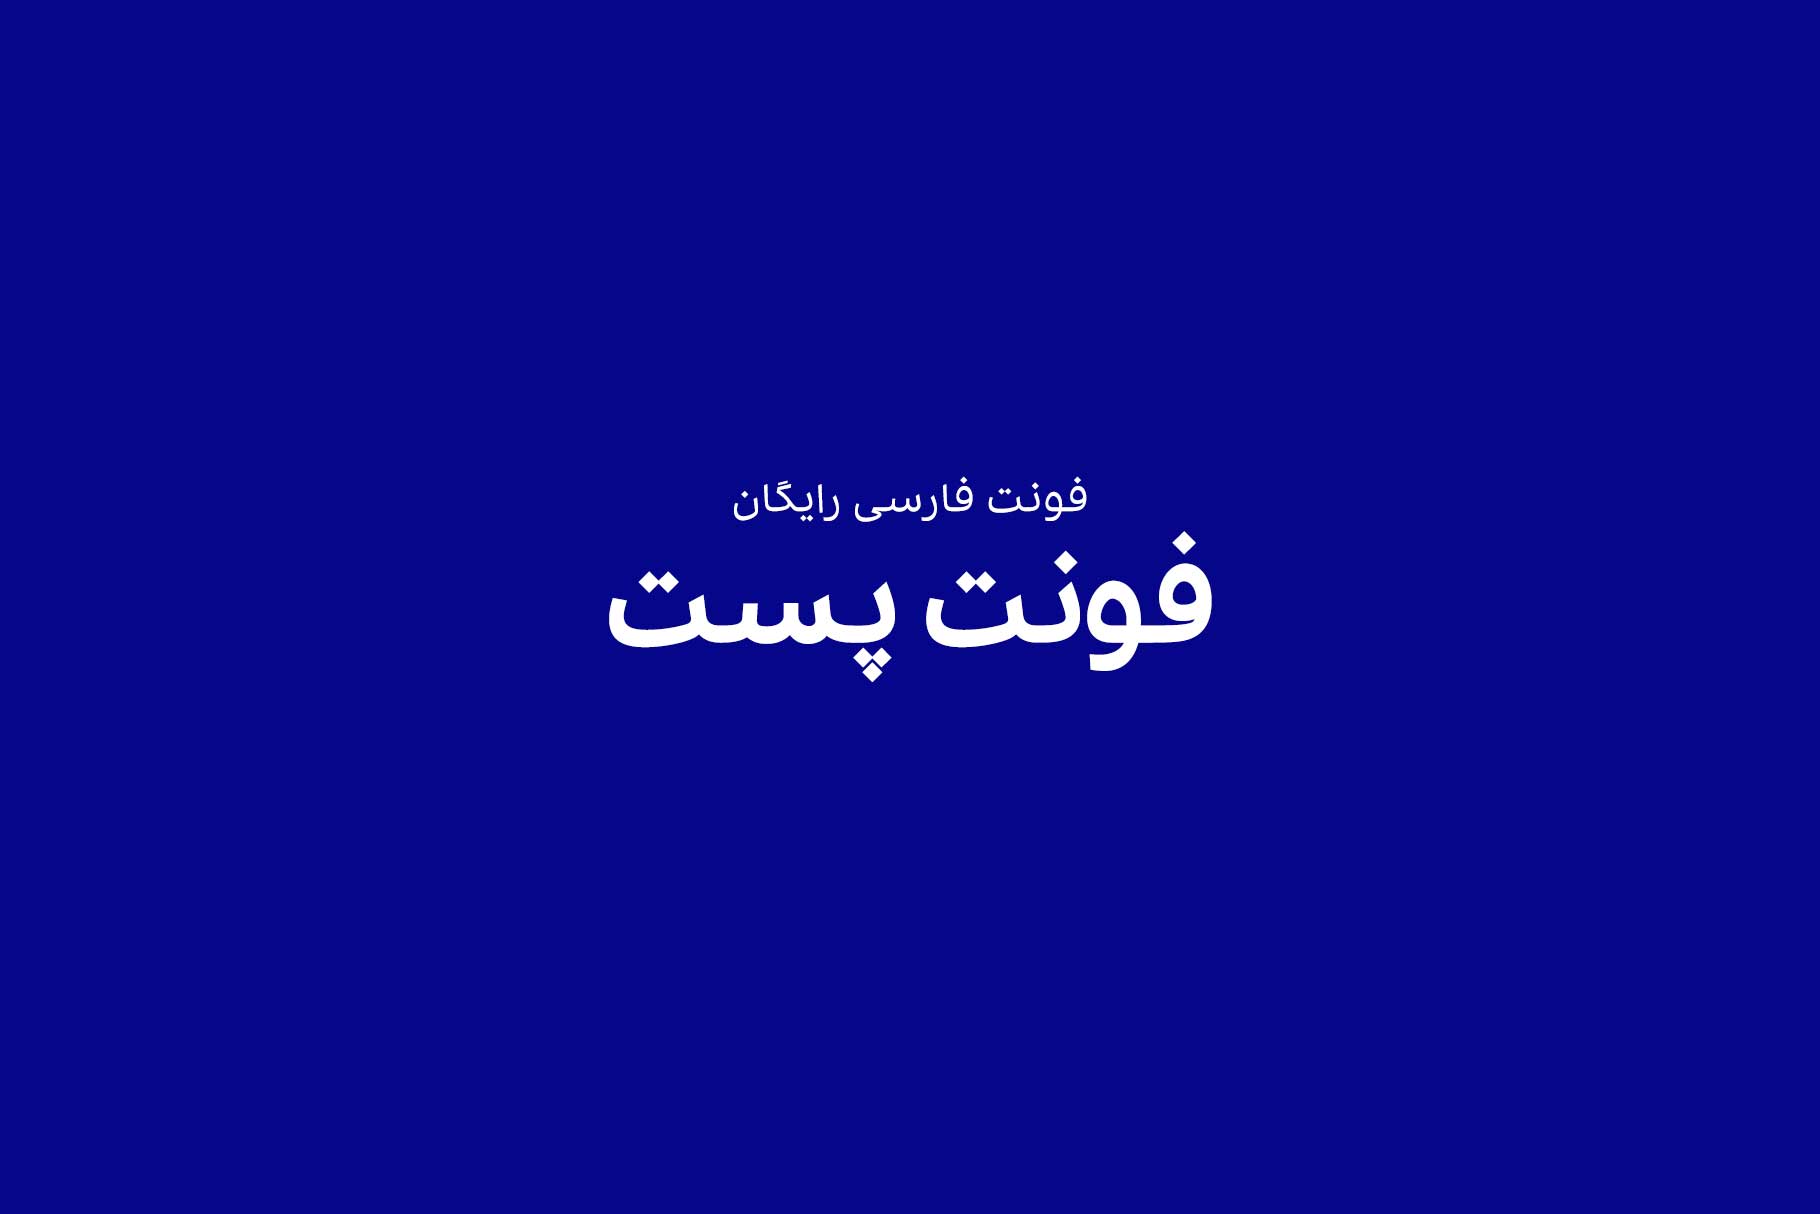 فونت فارسی شرکت پست